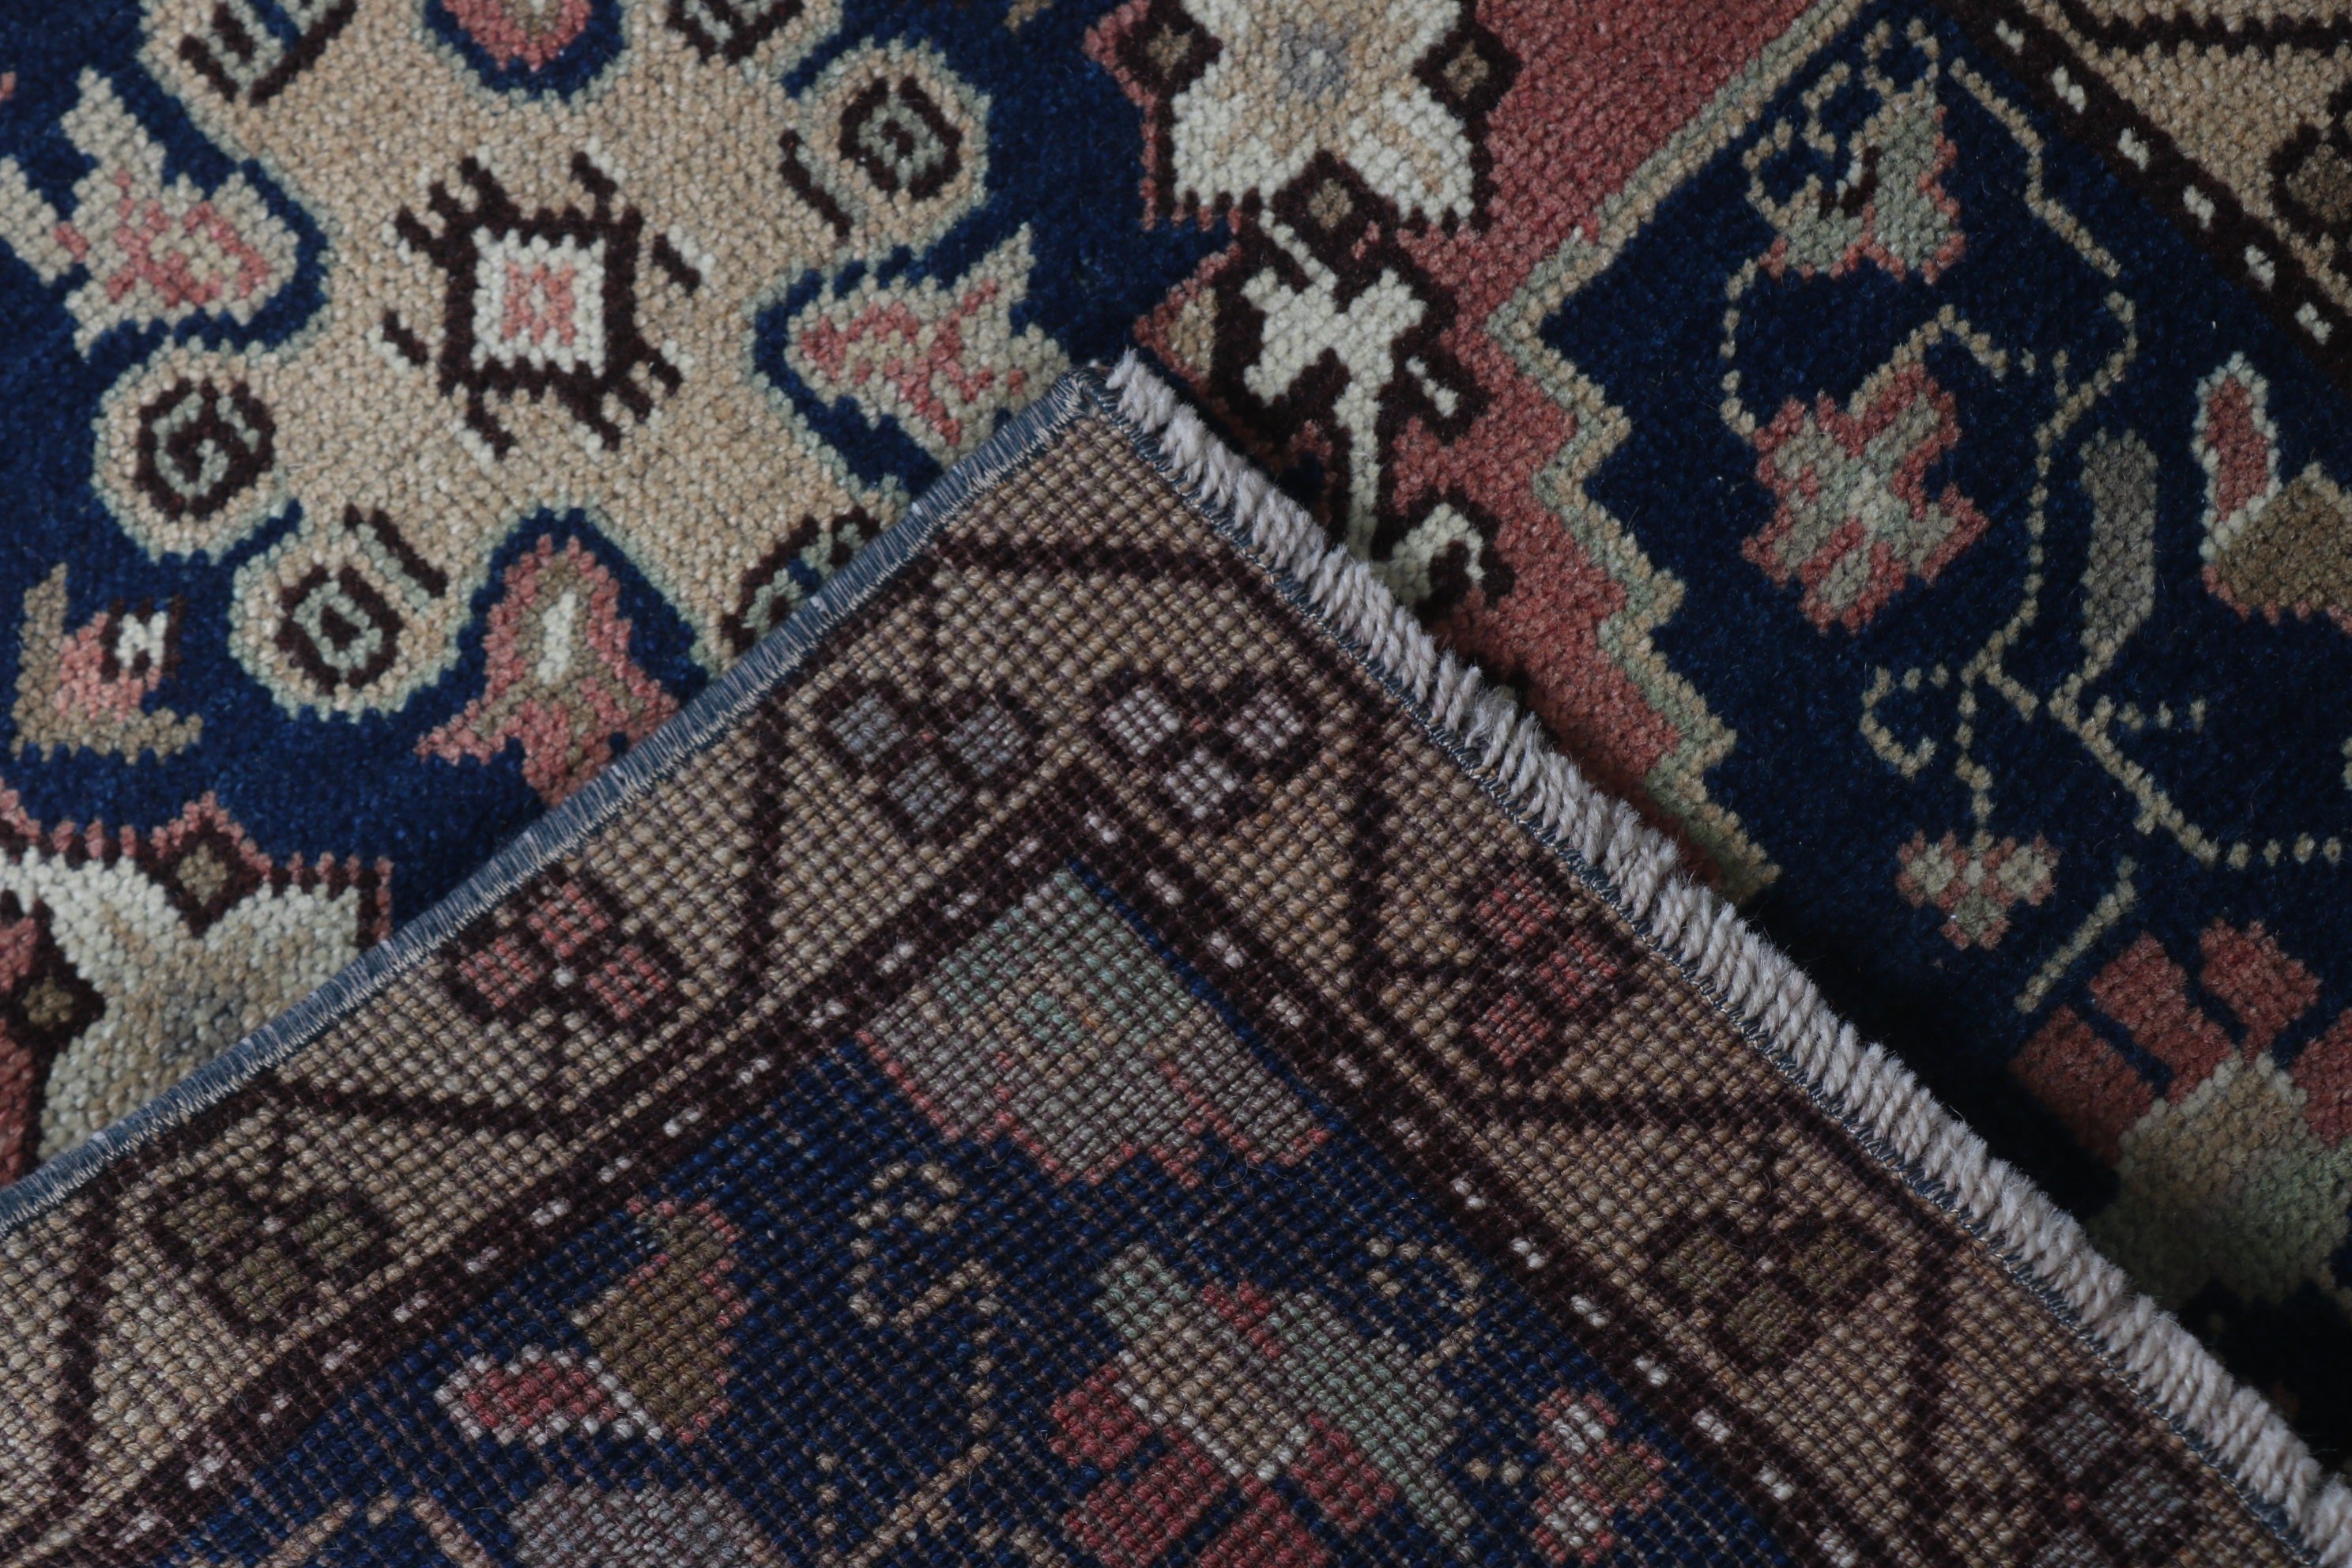 Bedroom Rug, Moroccan Rug, Brown Floor Rug, Art Rug, Turkish Rug, Bathroom Rug, Home Decor Rug, Vintage Rugs, 1.7x3.9 ft Small Rug